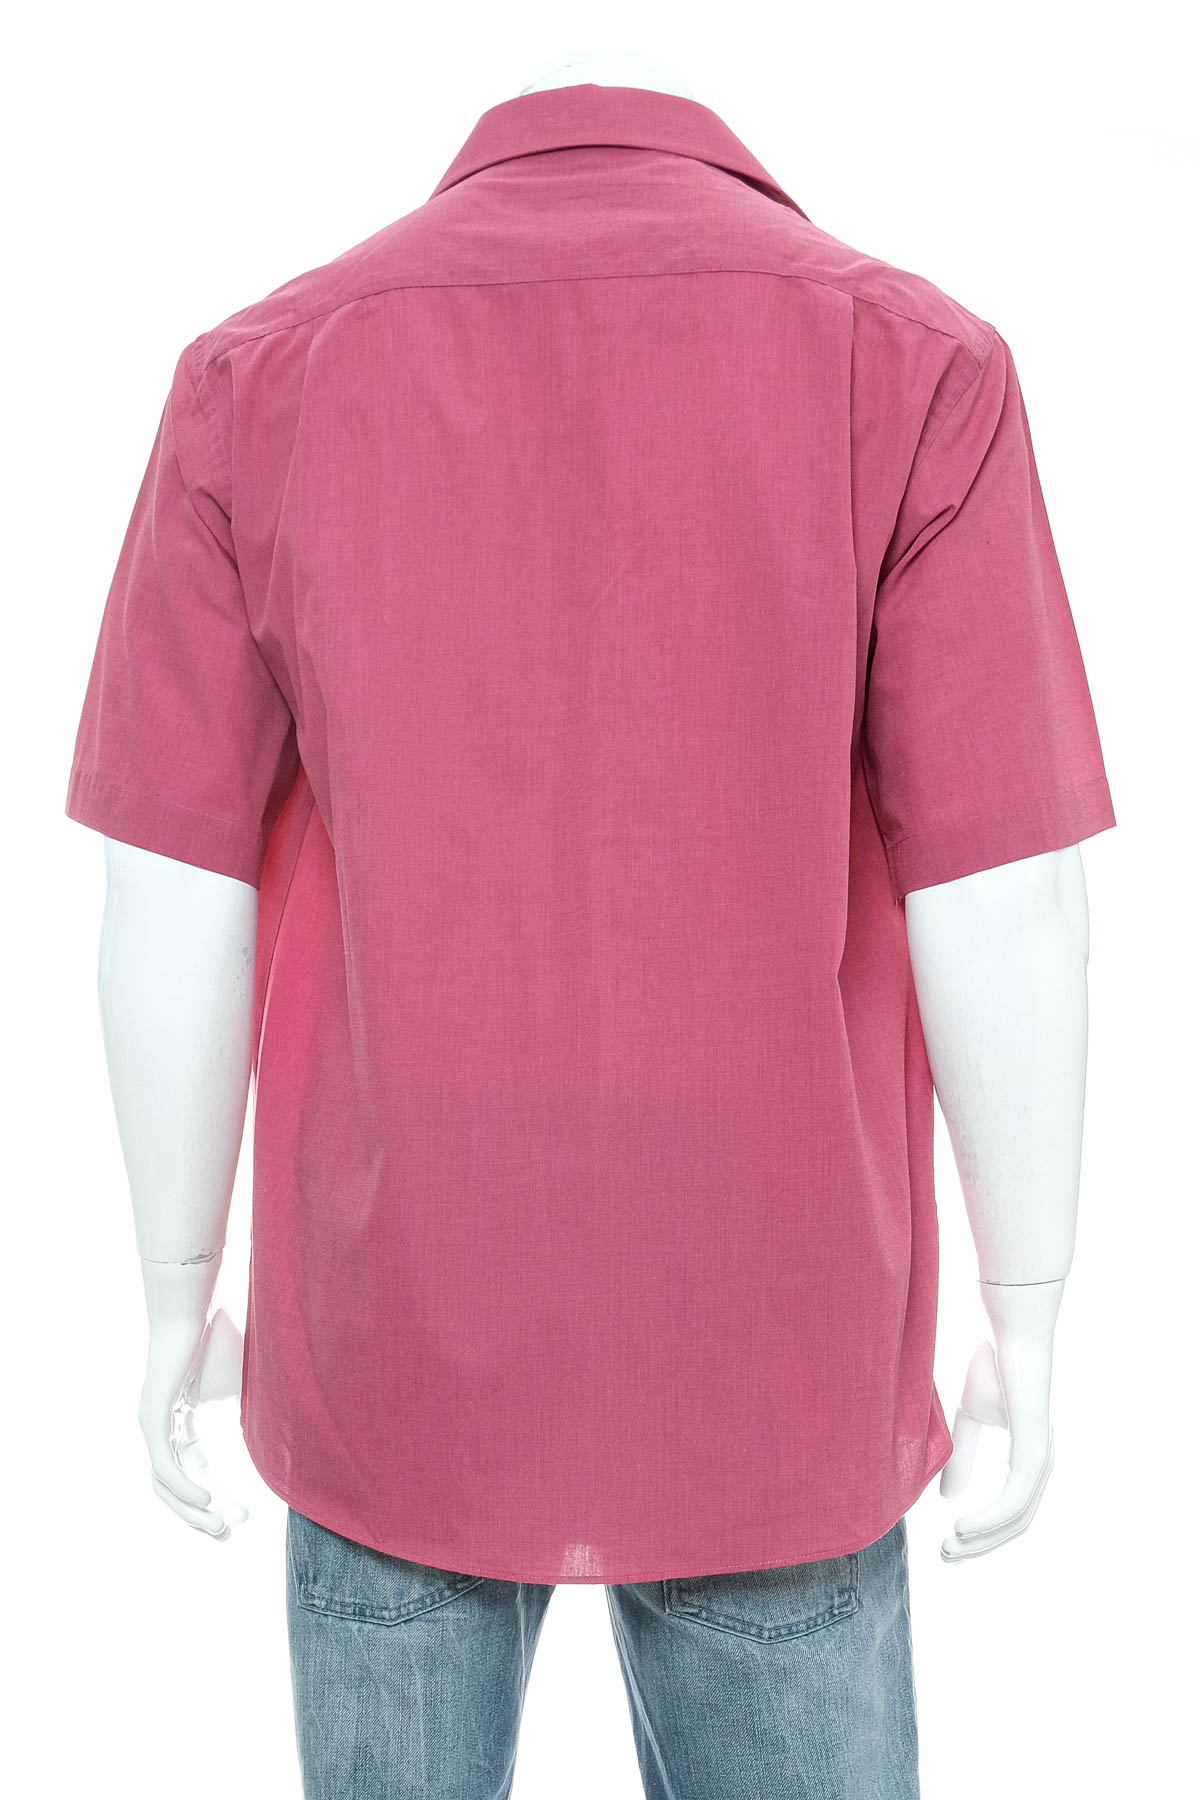 Ανδρικό πουκάμισο - Kingfield - 1